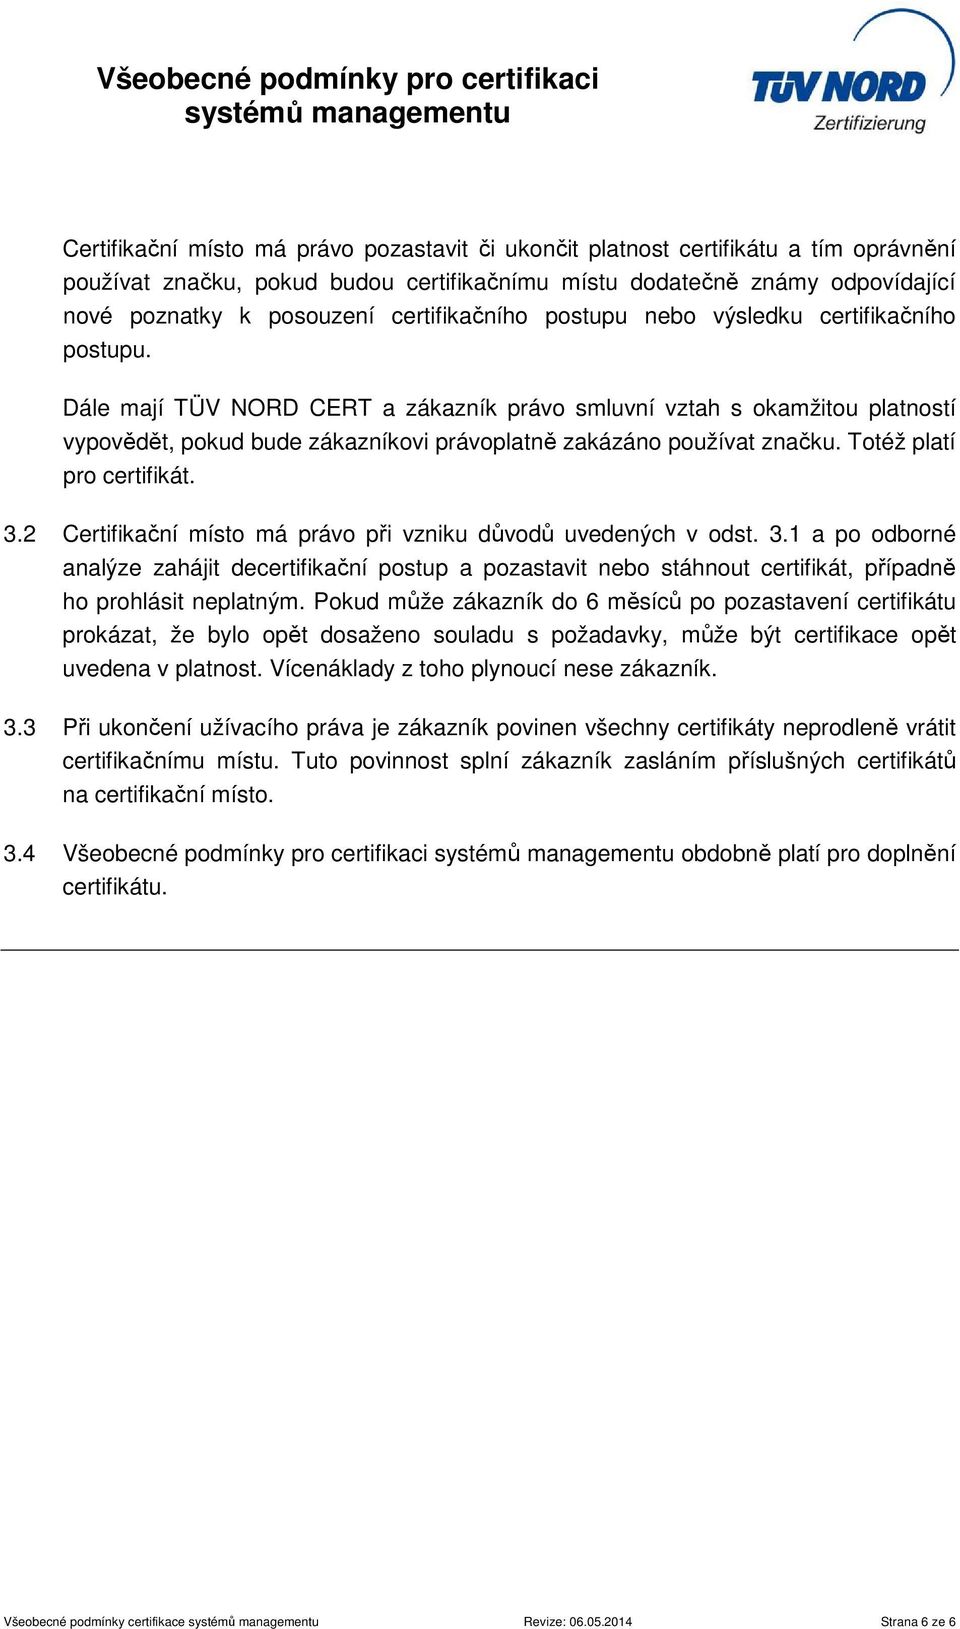 Dále mají TÜV NORD CERT a zákazník právo smluvní vztah s okamžitou platností vypovědět, pokud bude zákazníkovi právoplatně zakázáno používat značku. Totéž platí pro certifikát. 3.